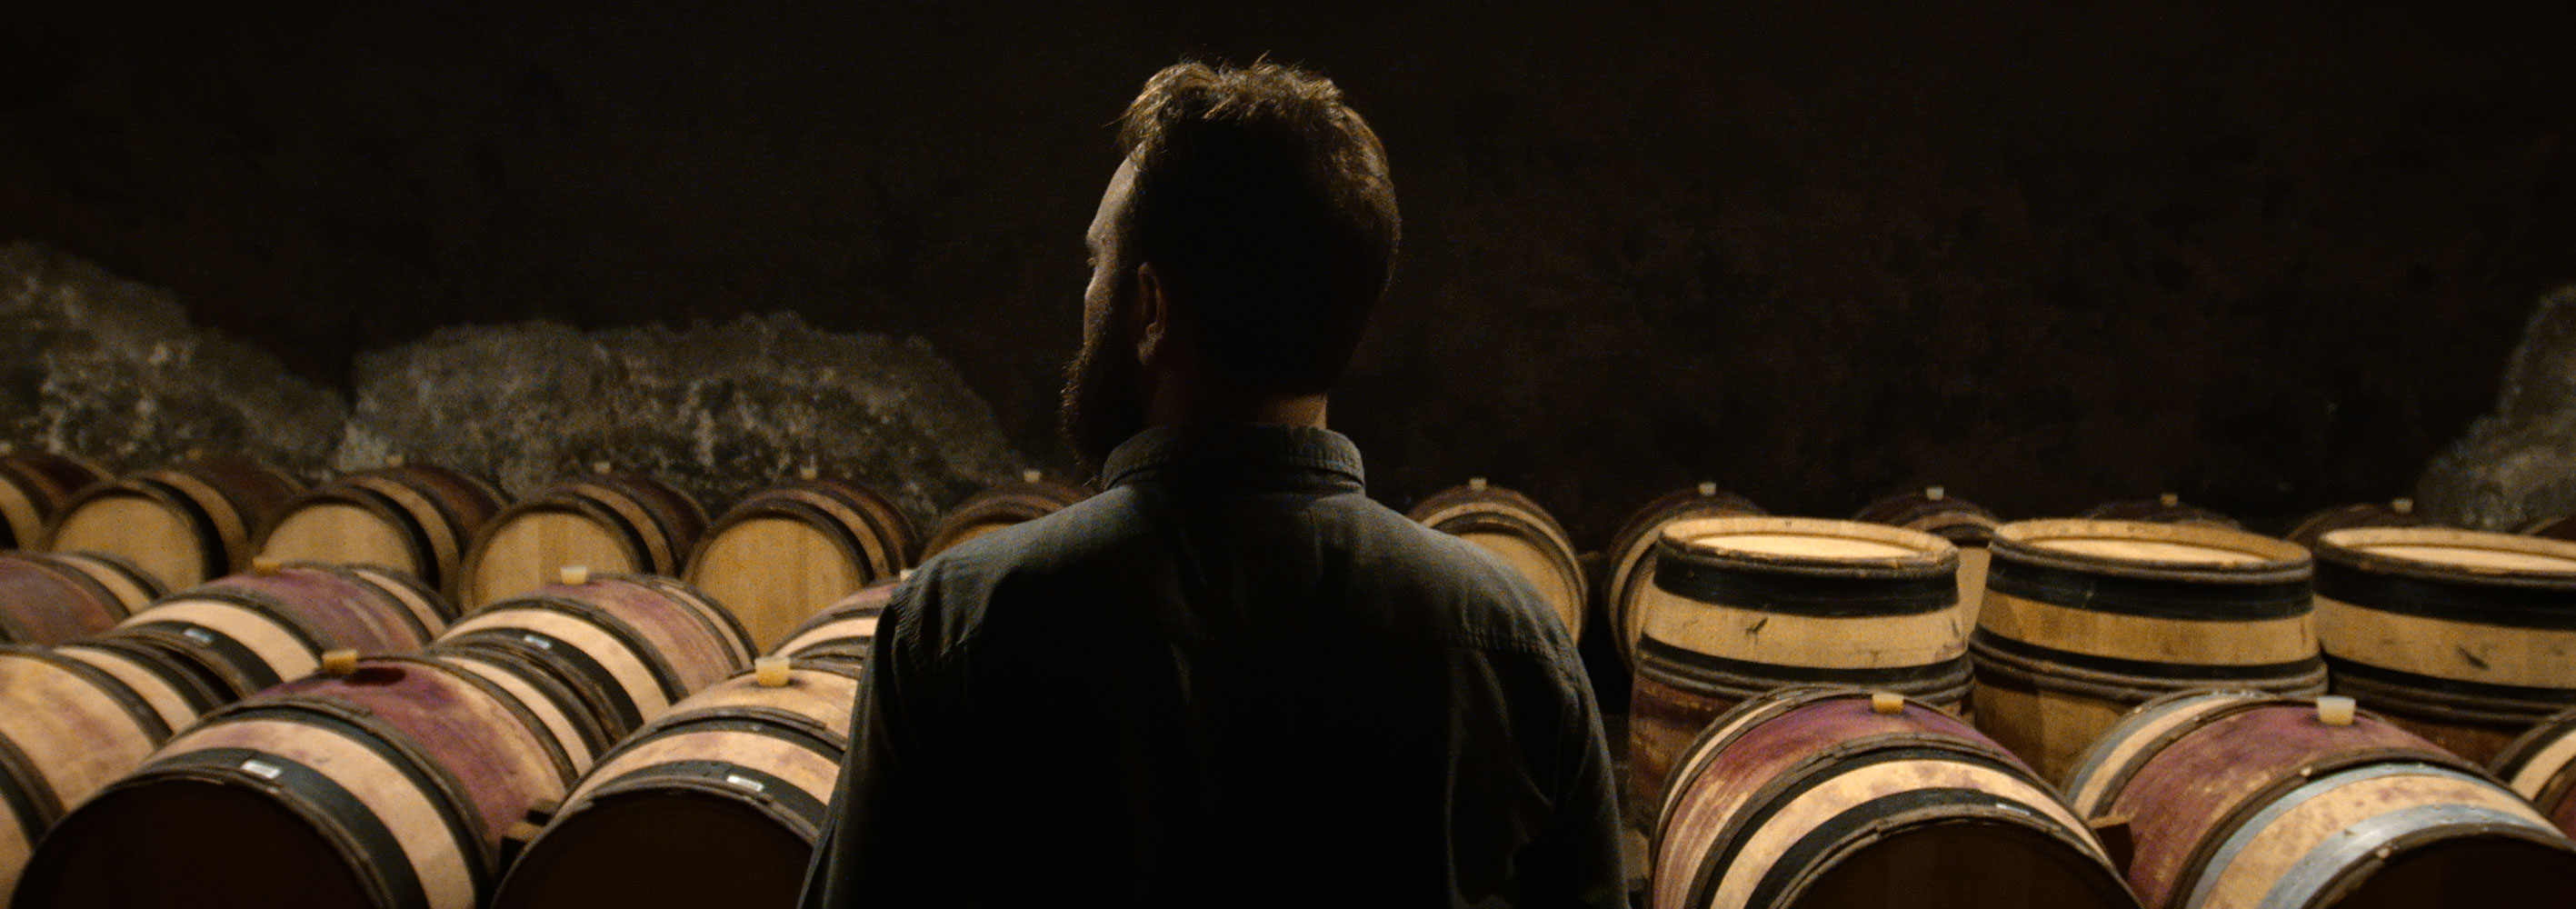 Winemaker Julien Howespian inspects barrels of wine in Burgundy, France